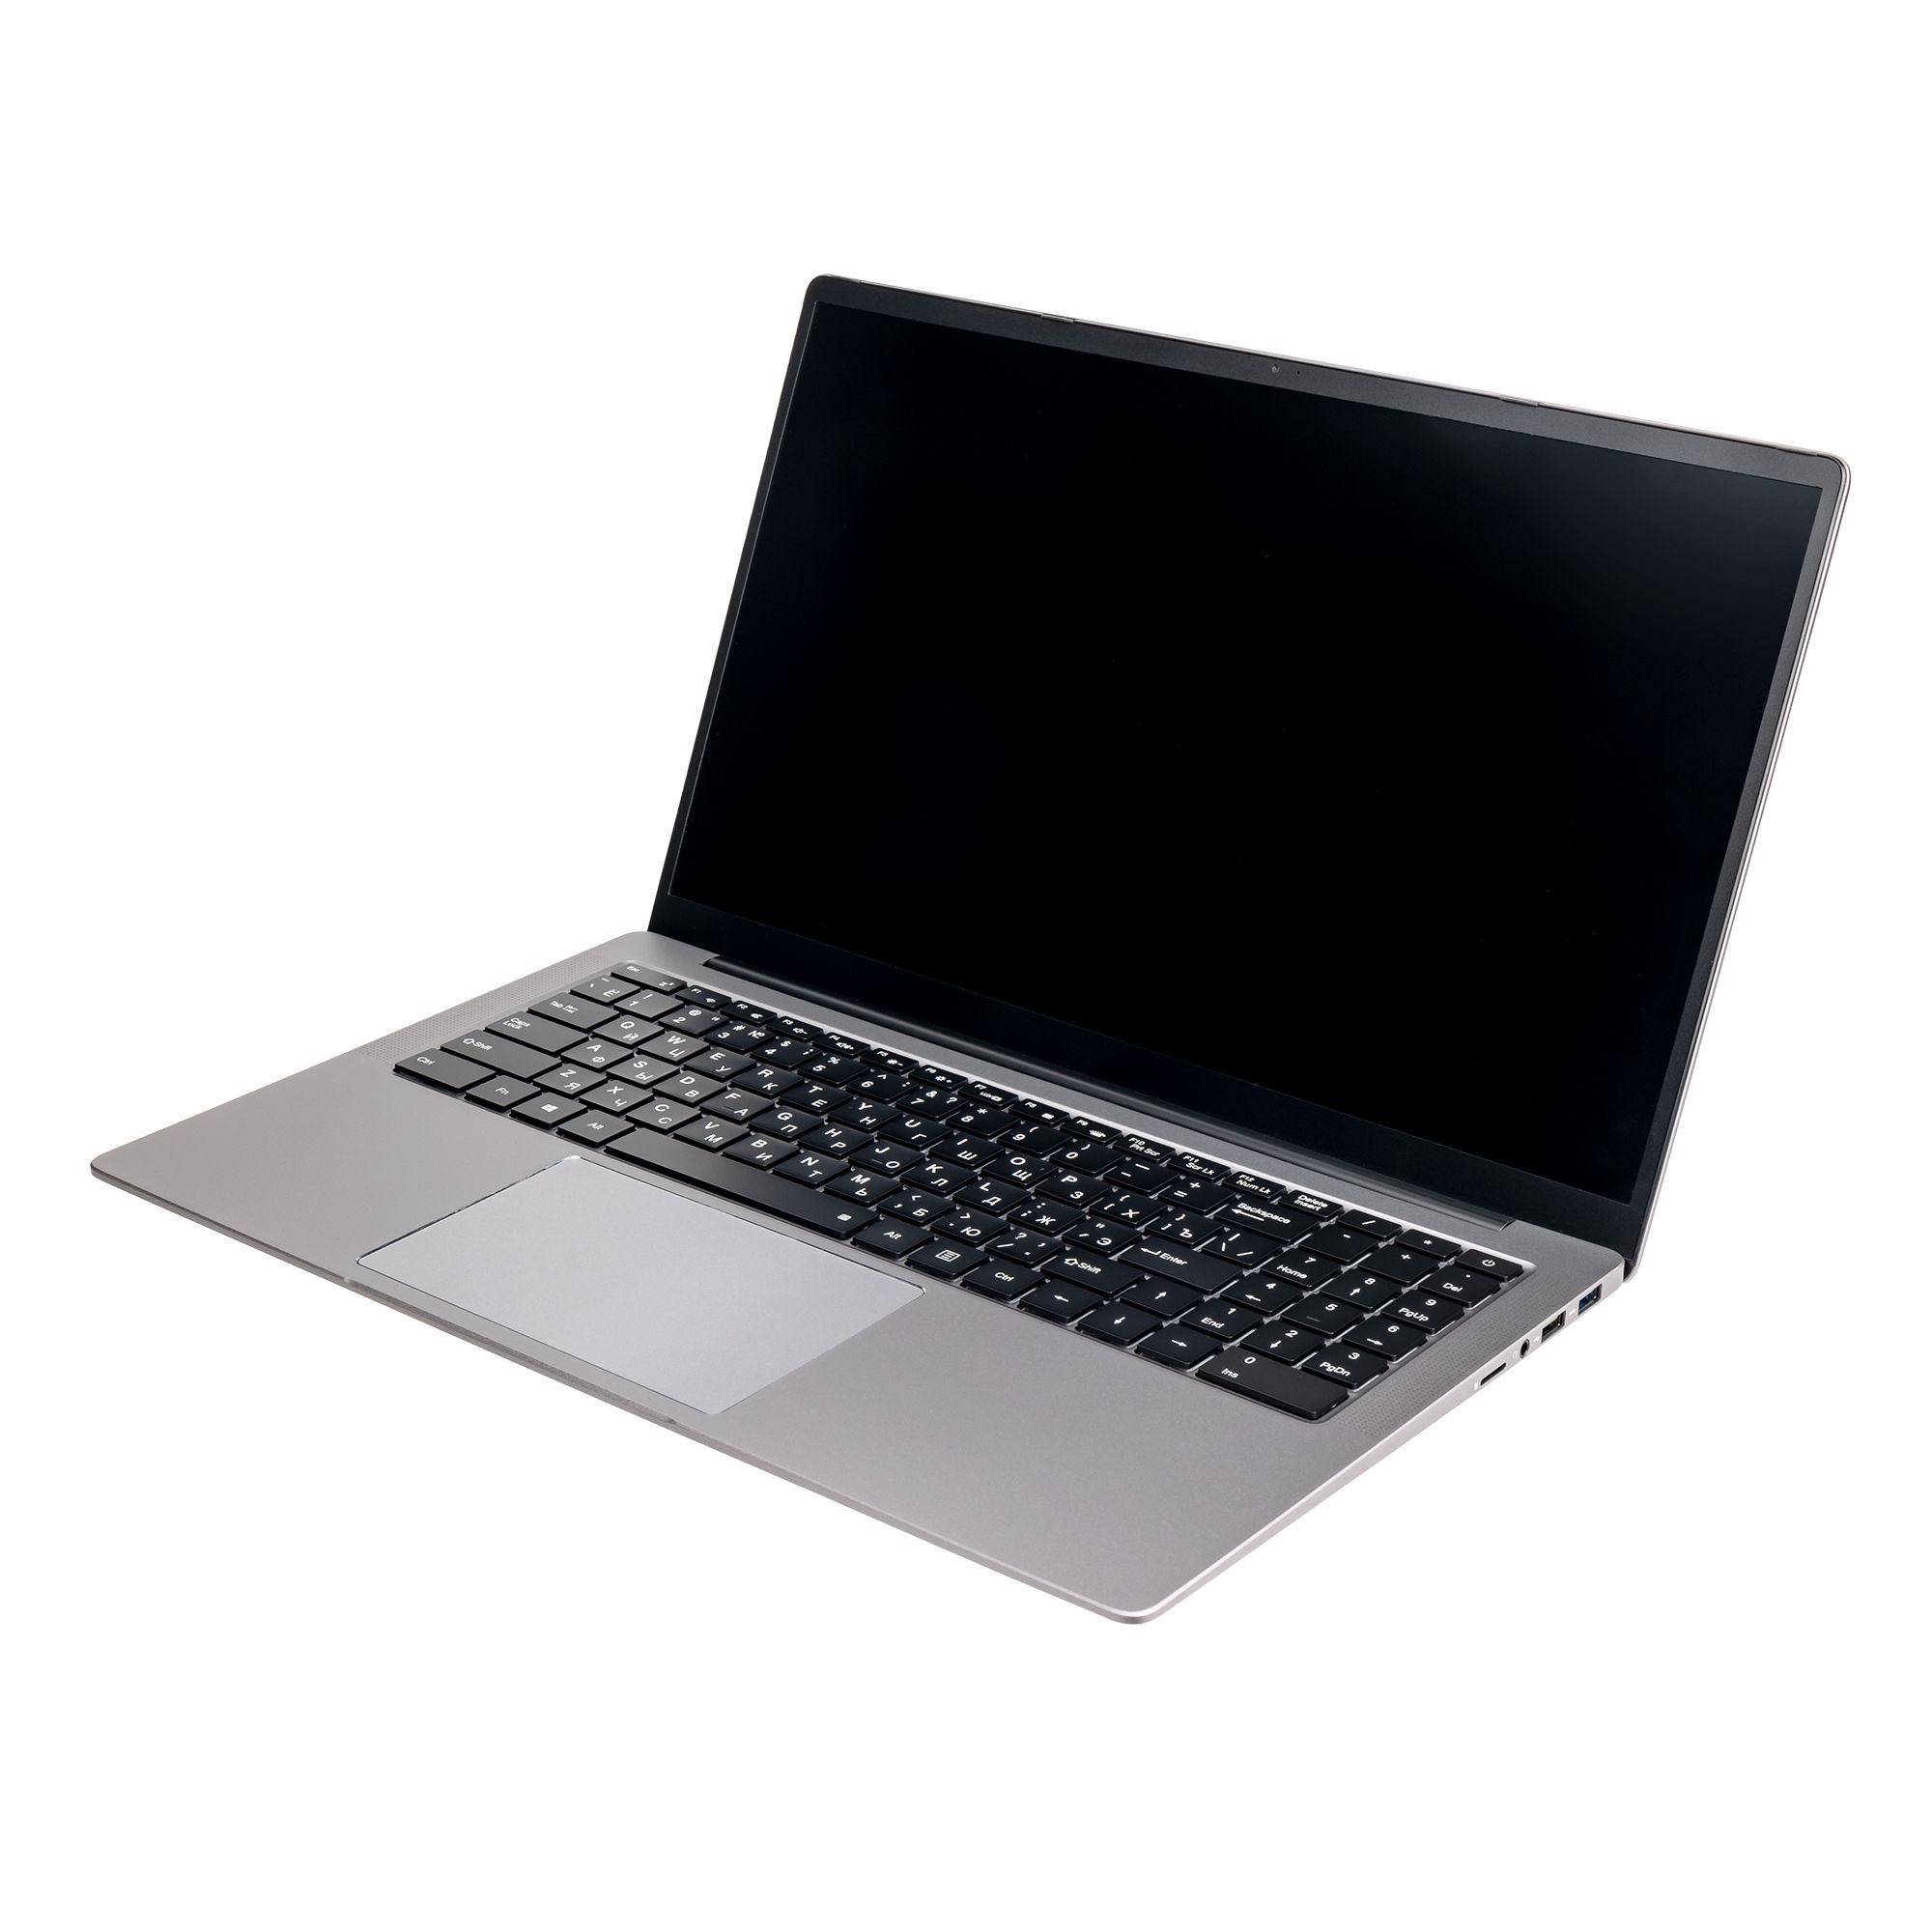 Ноутбук Hiper Expertbook MTL1601 (MTL1601B1135WH) цена и фото